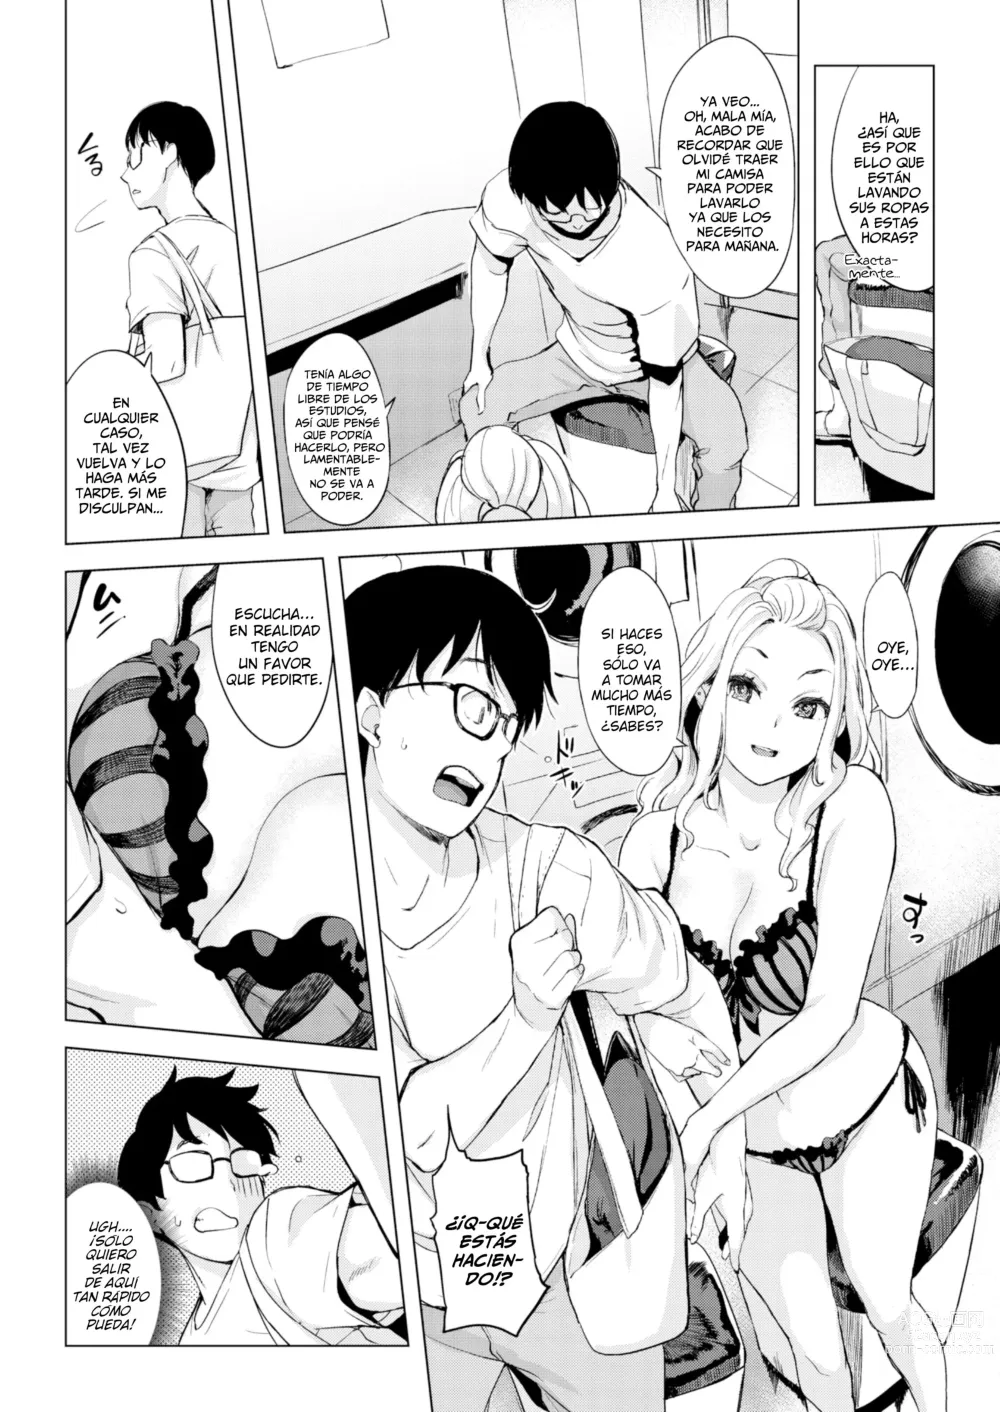 Page 6 of manga ¡Vamos A La Lavandería!